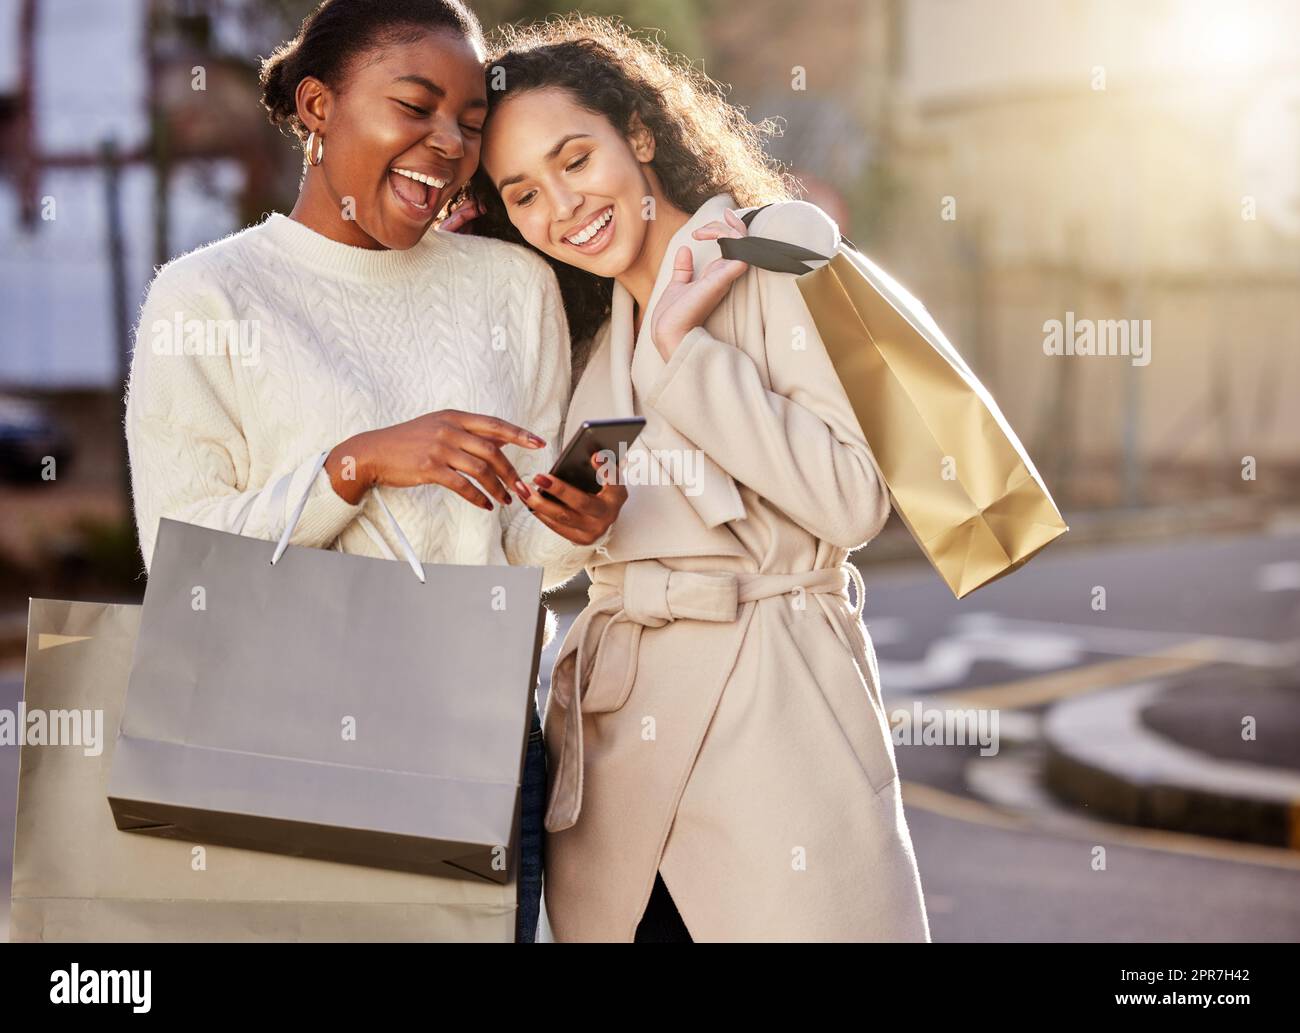 Compra lo mejor por mucho menos. Dos mujeres jóvenes que usan un smartphone mientras hacen compras con un fondo urbano. Foto de stock